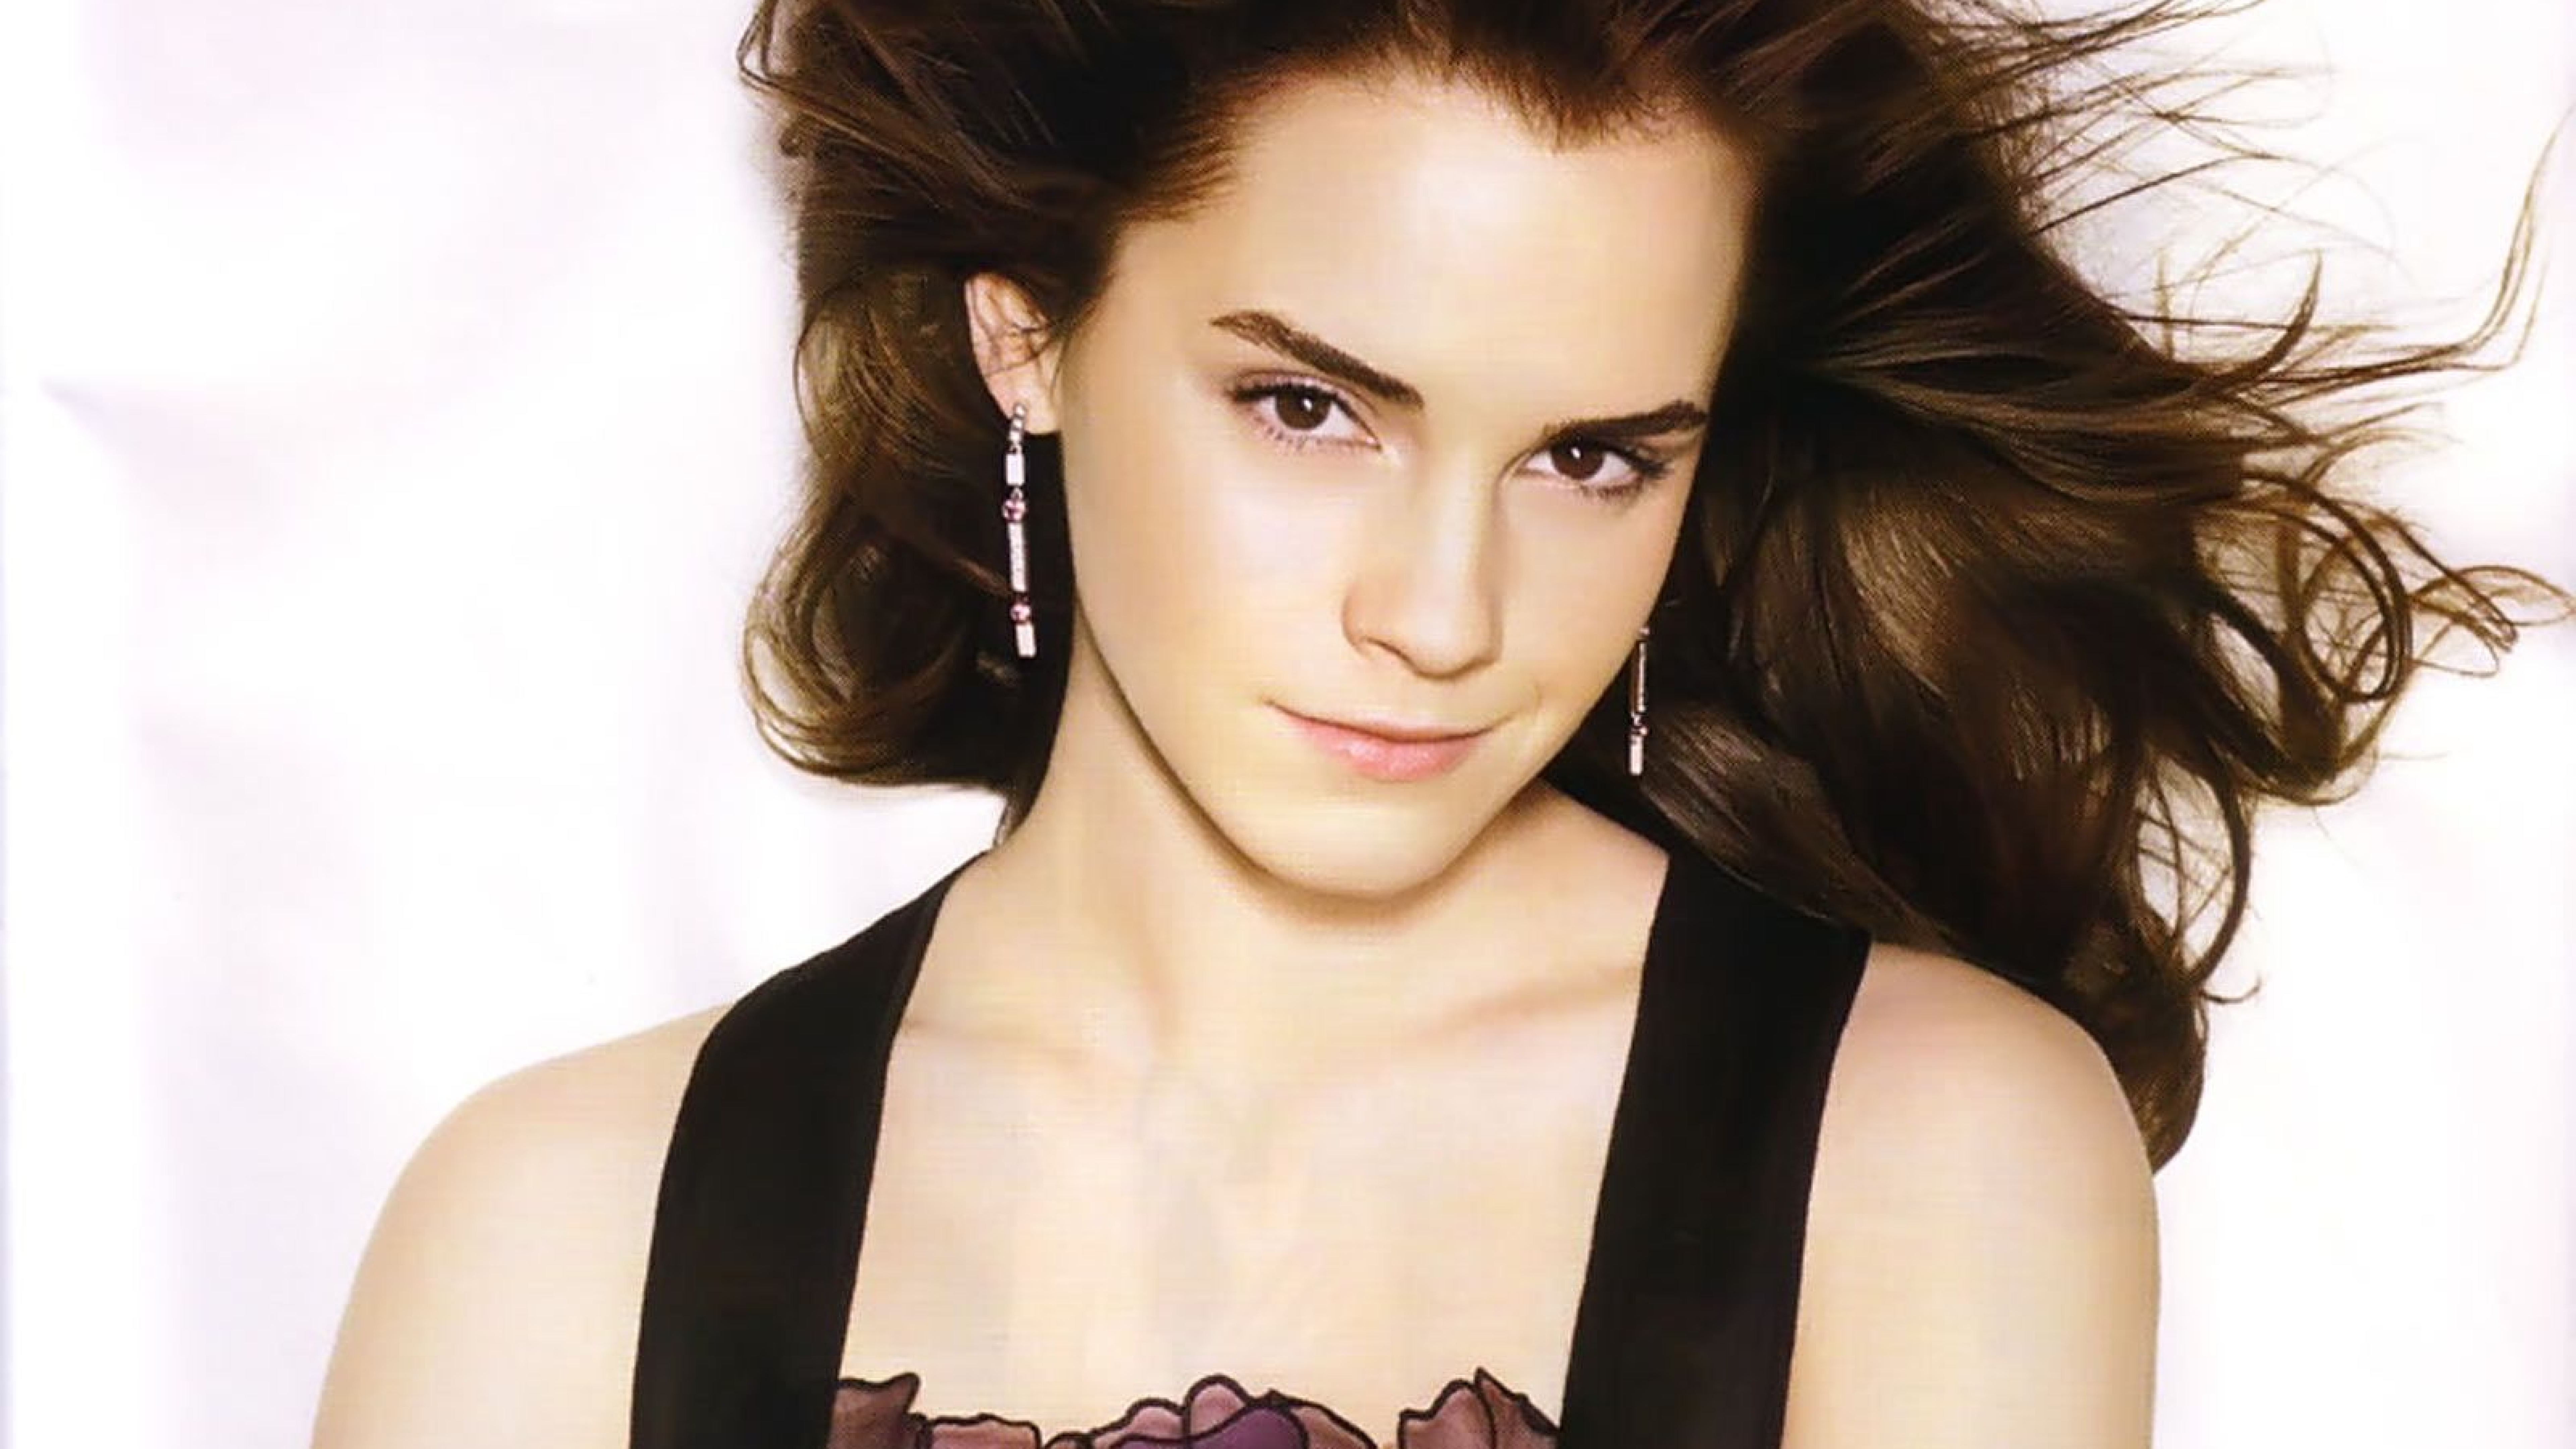 Wallpaper Emma Watson beauty 4k Celebrities 15539